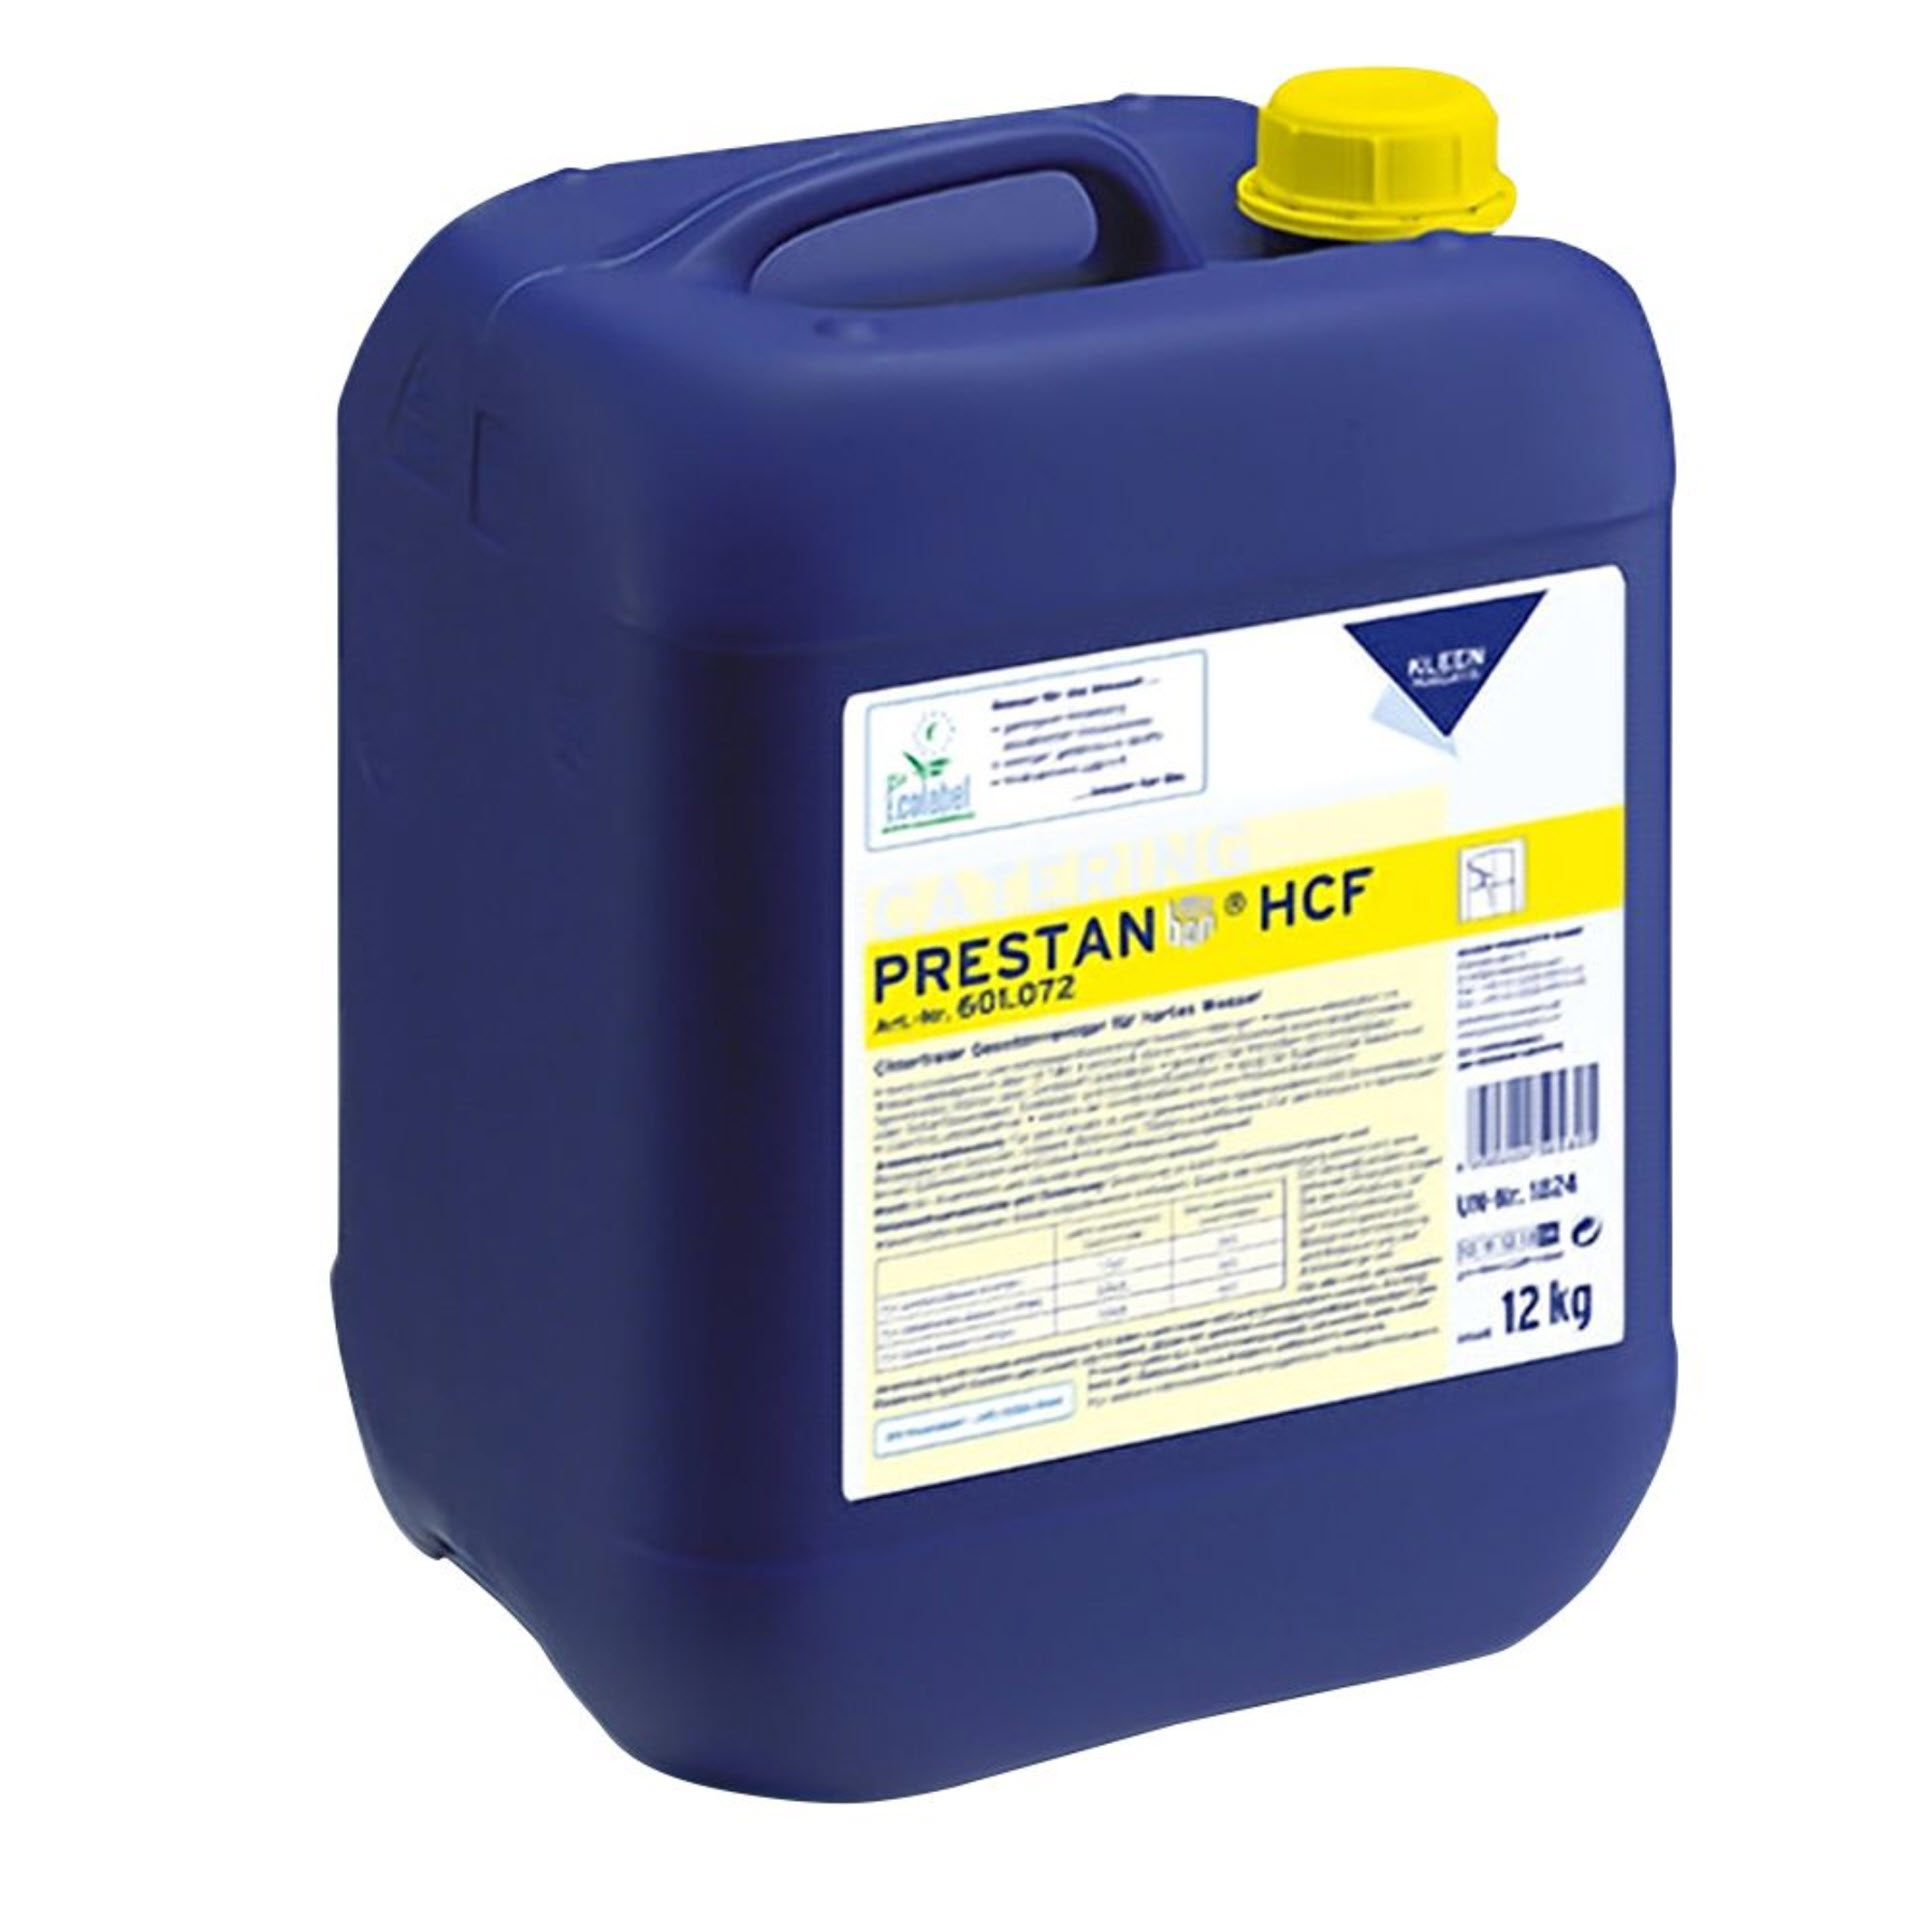 Kleen Purgatis PRESTAN HCF – alkalischer Geschirrreiniger - 12 kg